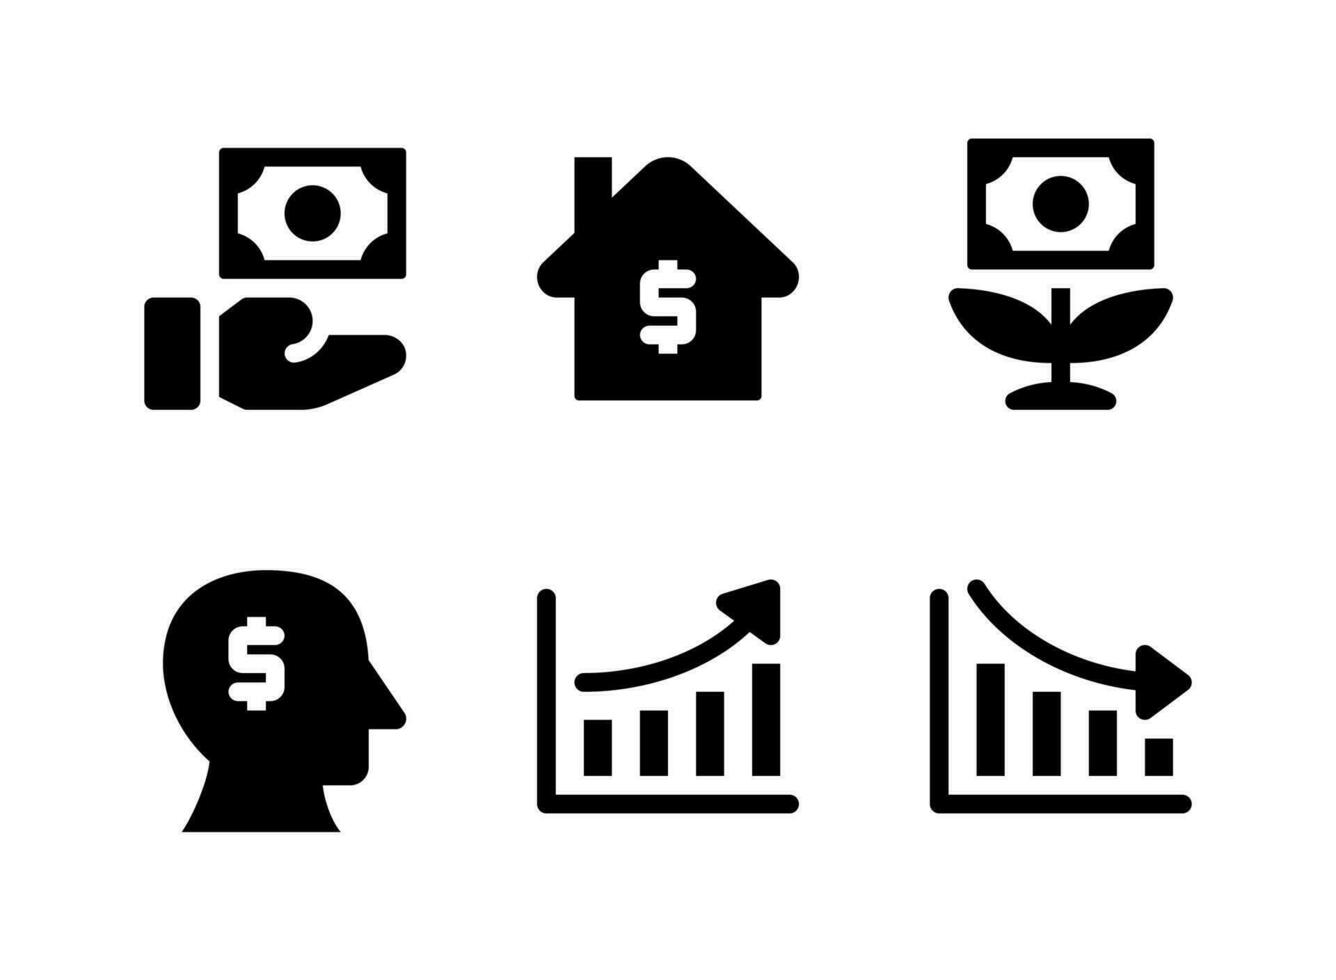 eenvoudige set van investeringen gerelateerde vector solide pictogrammen. bevat pictogrammen als geld, huis, groei, geest en meer.